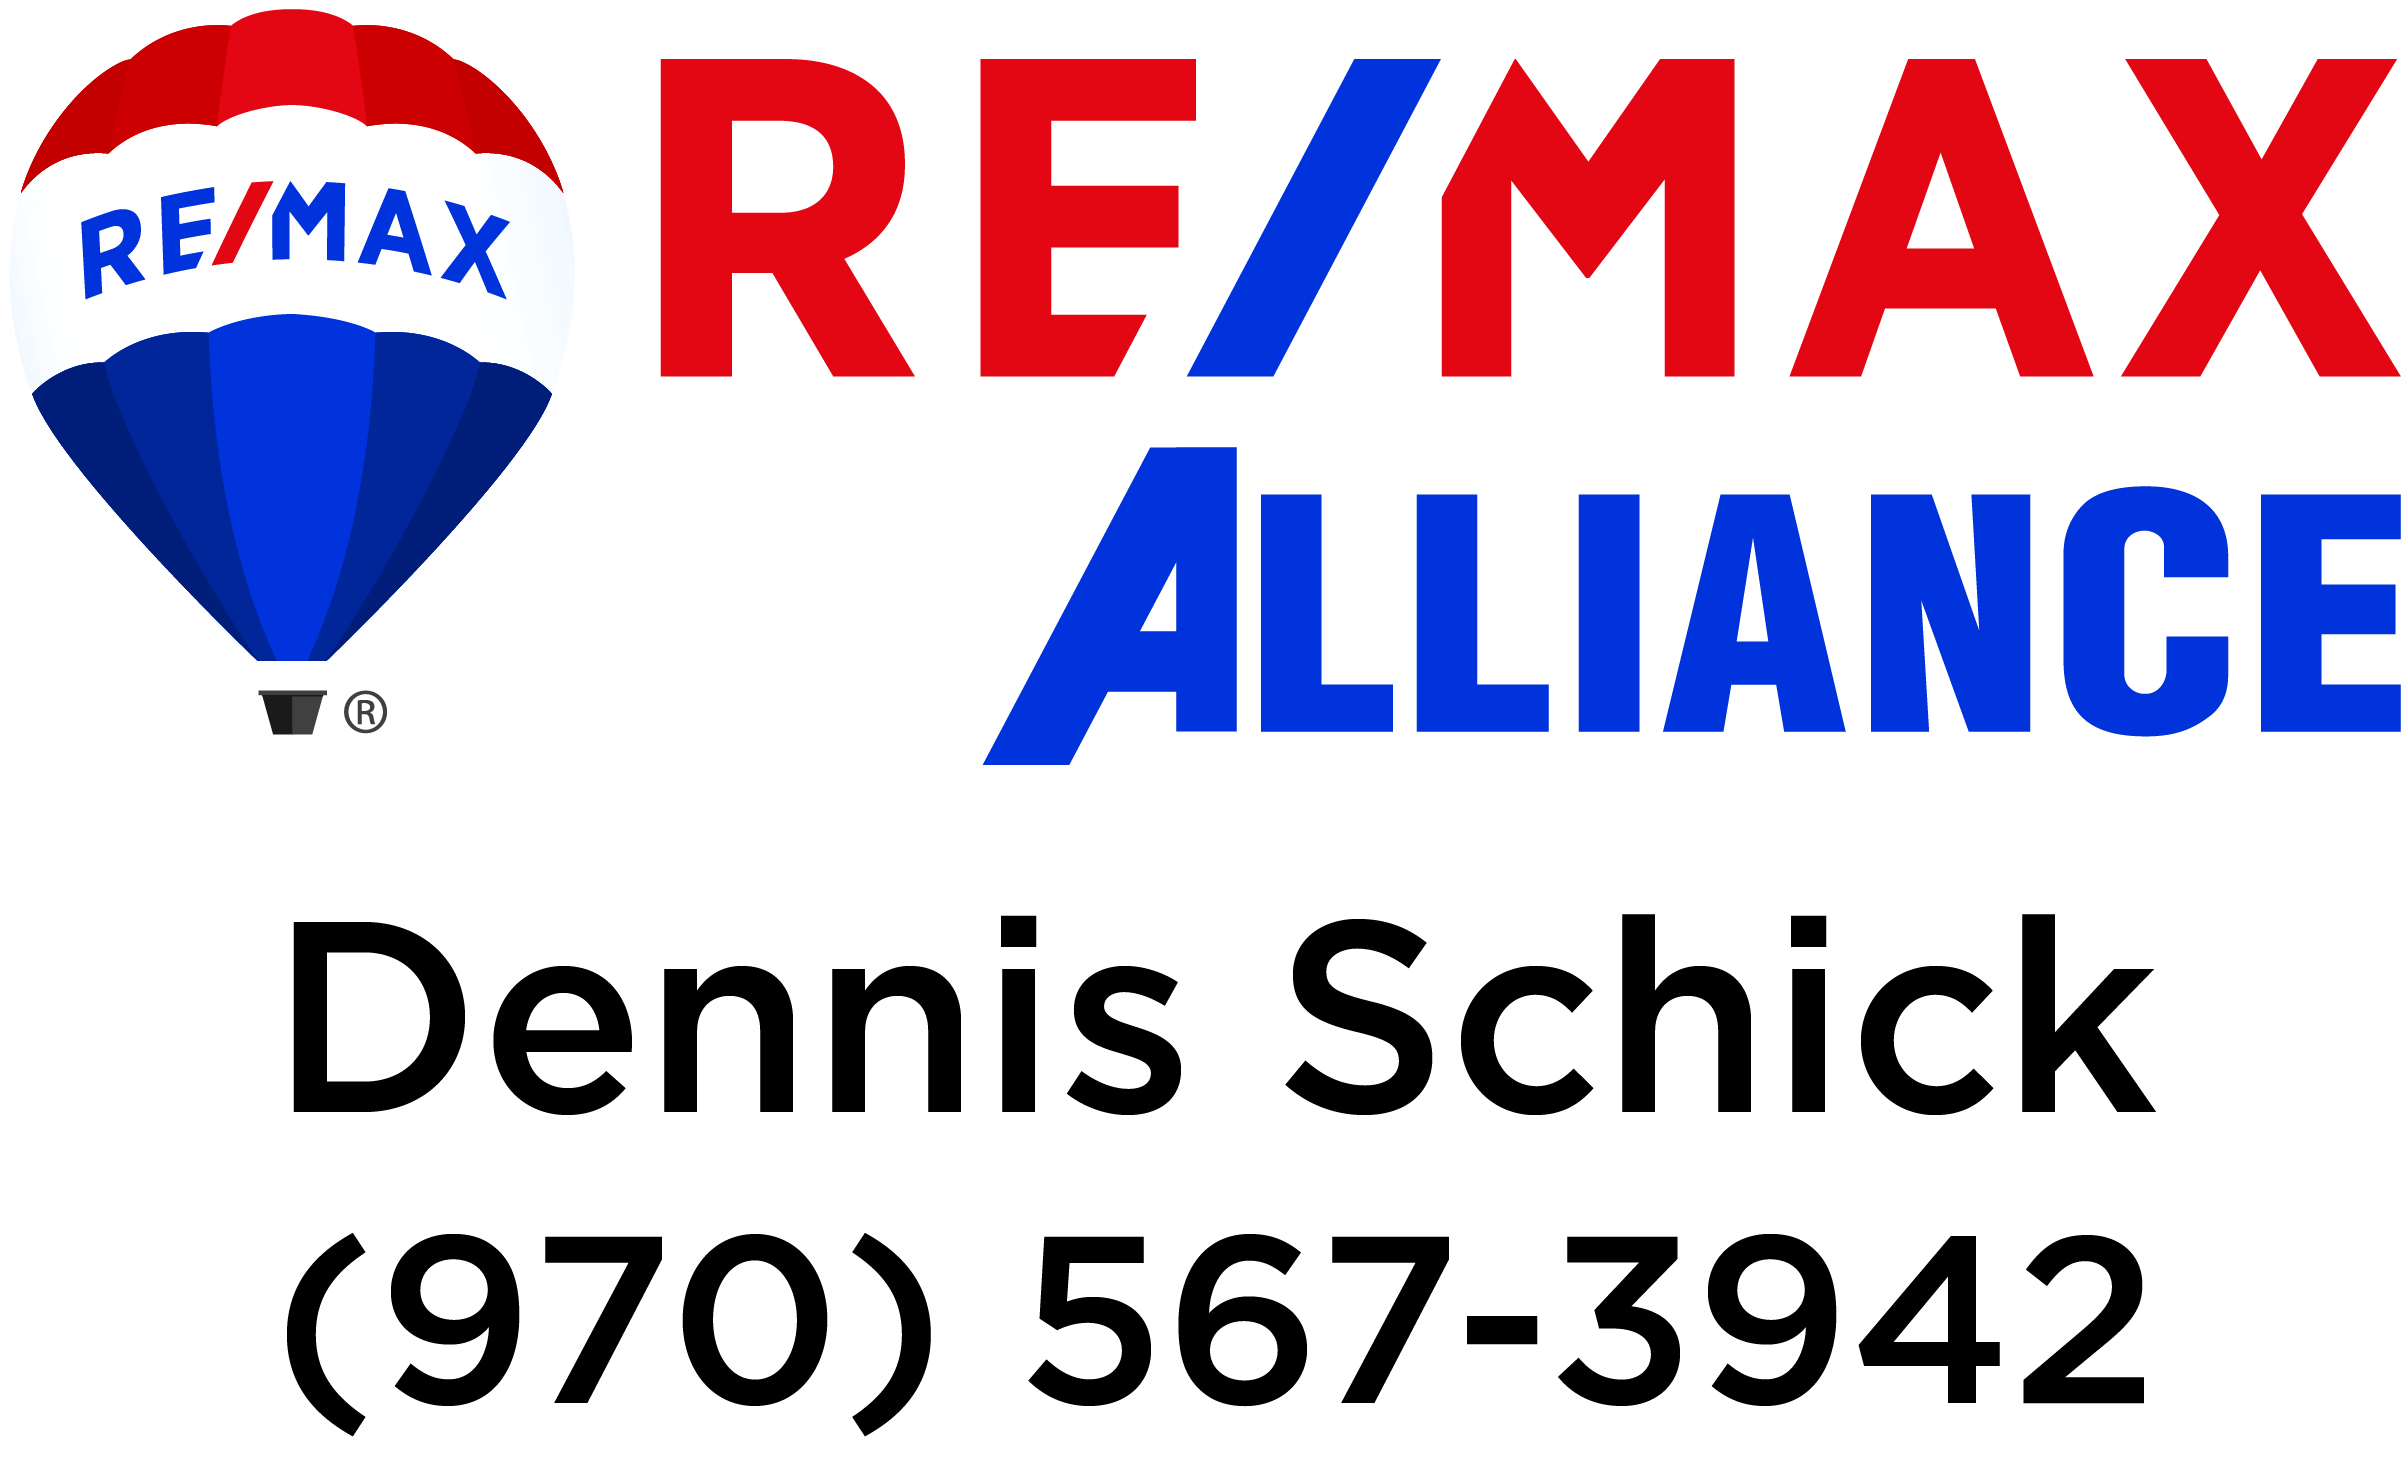 Dennis Schick - RE/MAX Alliance